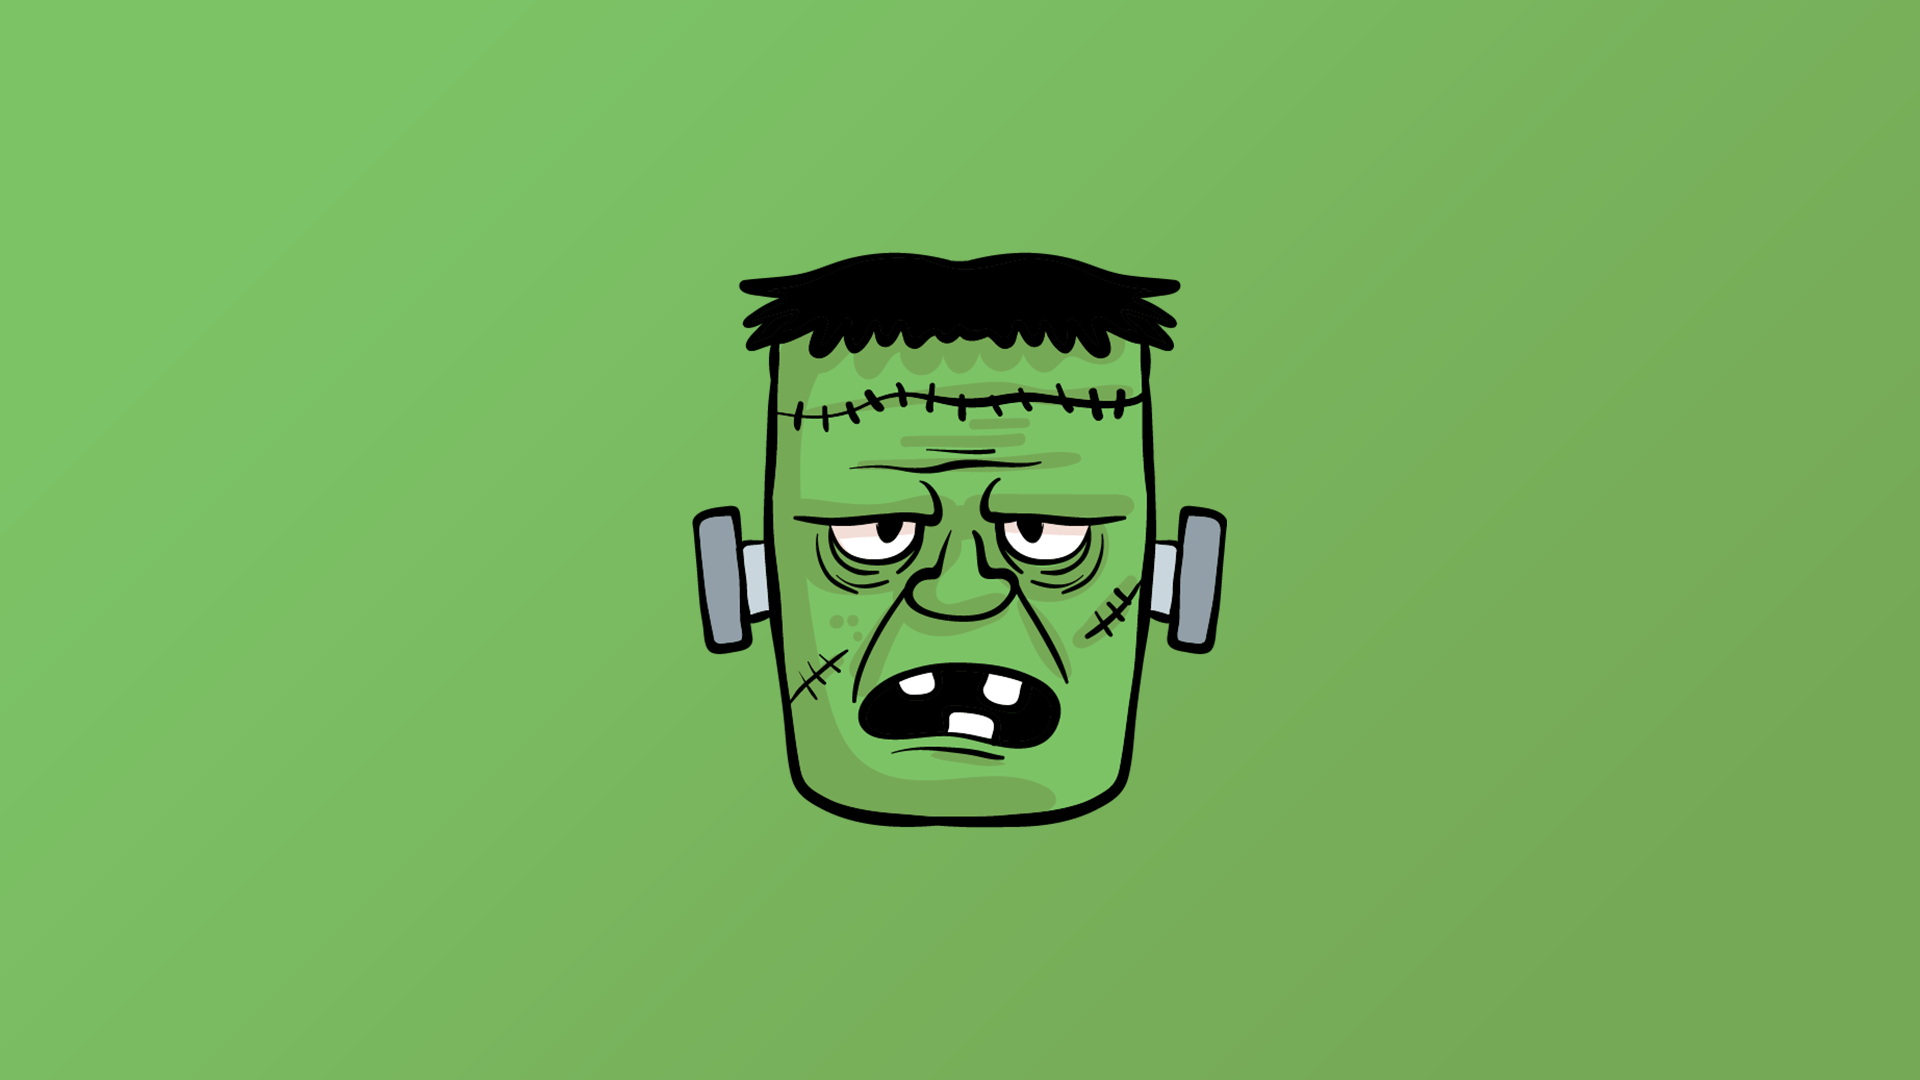 General 1920x1080 Frankenstein digital art green background simple background green scars Frankenstein's Monster